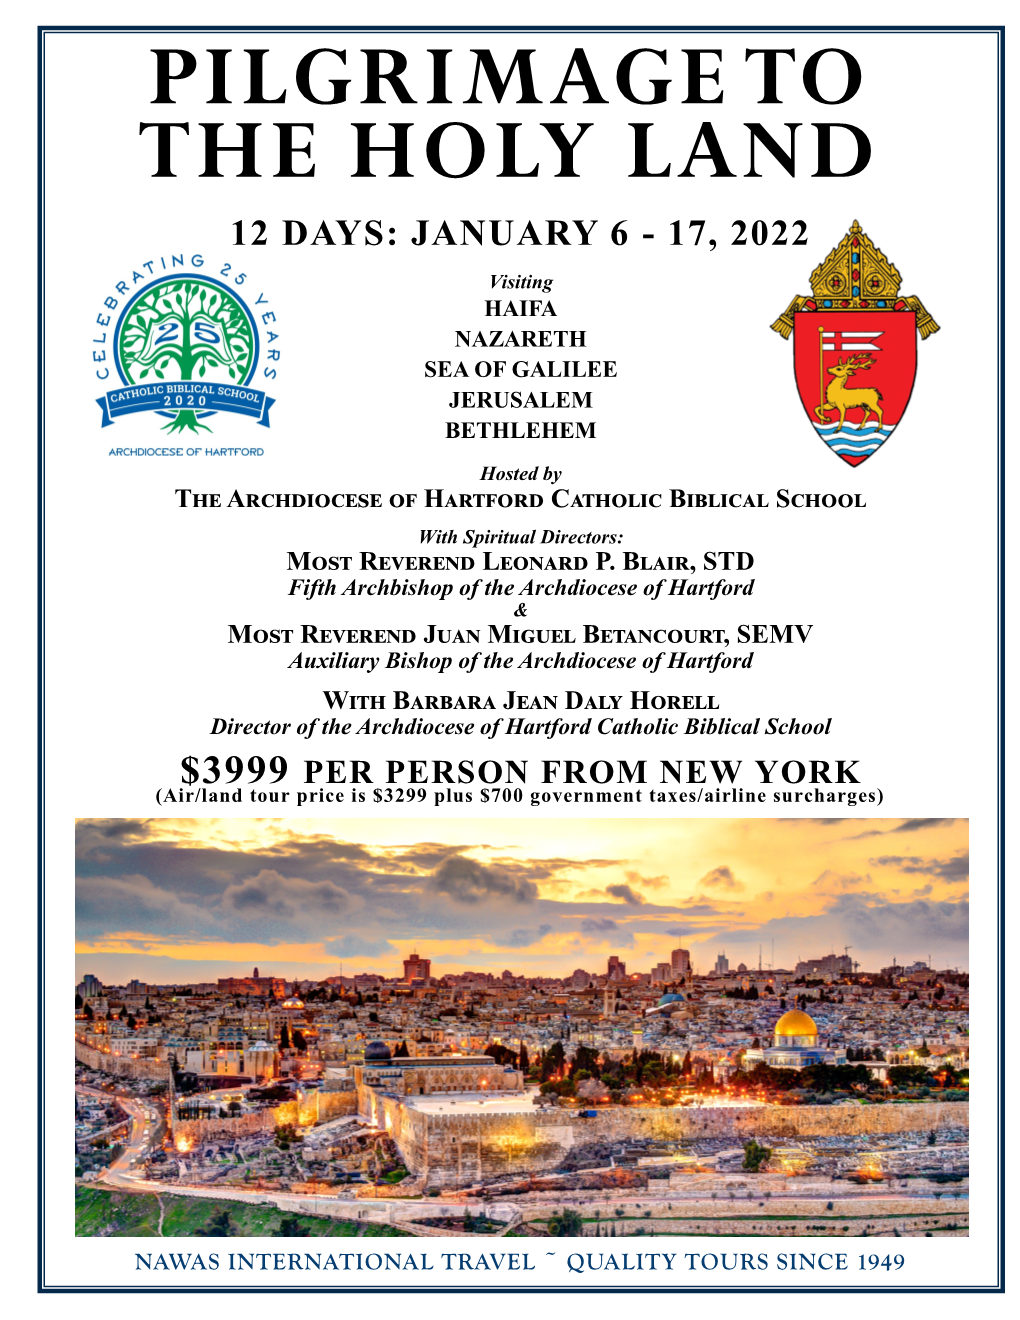 Pilgrimage to the Holy Land 12 Days: January 6 - 17, 2022